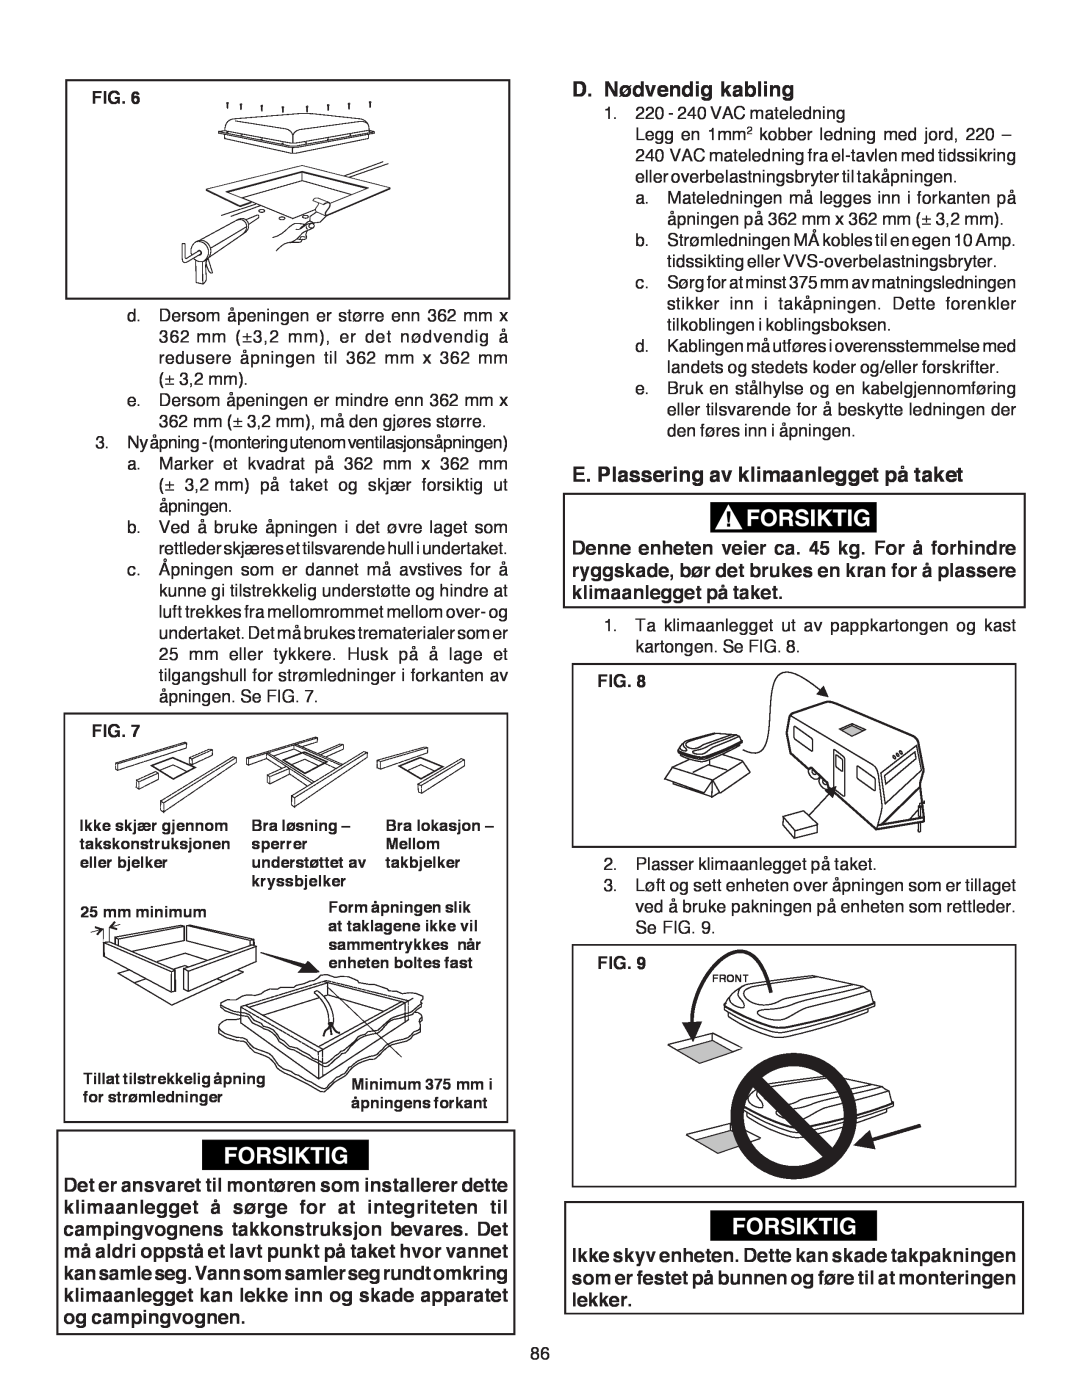 Dometic B3200 manual D.Nødvendig kabling, E.Plassering av klimaanlegget på taket, Fig 